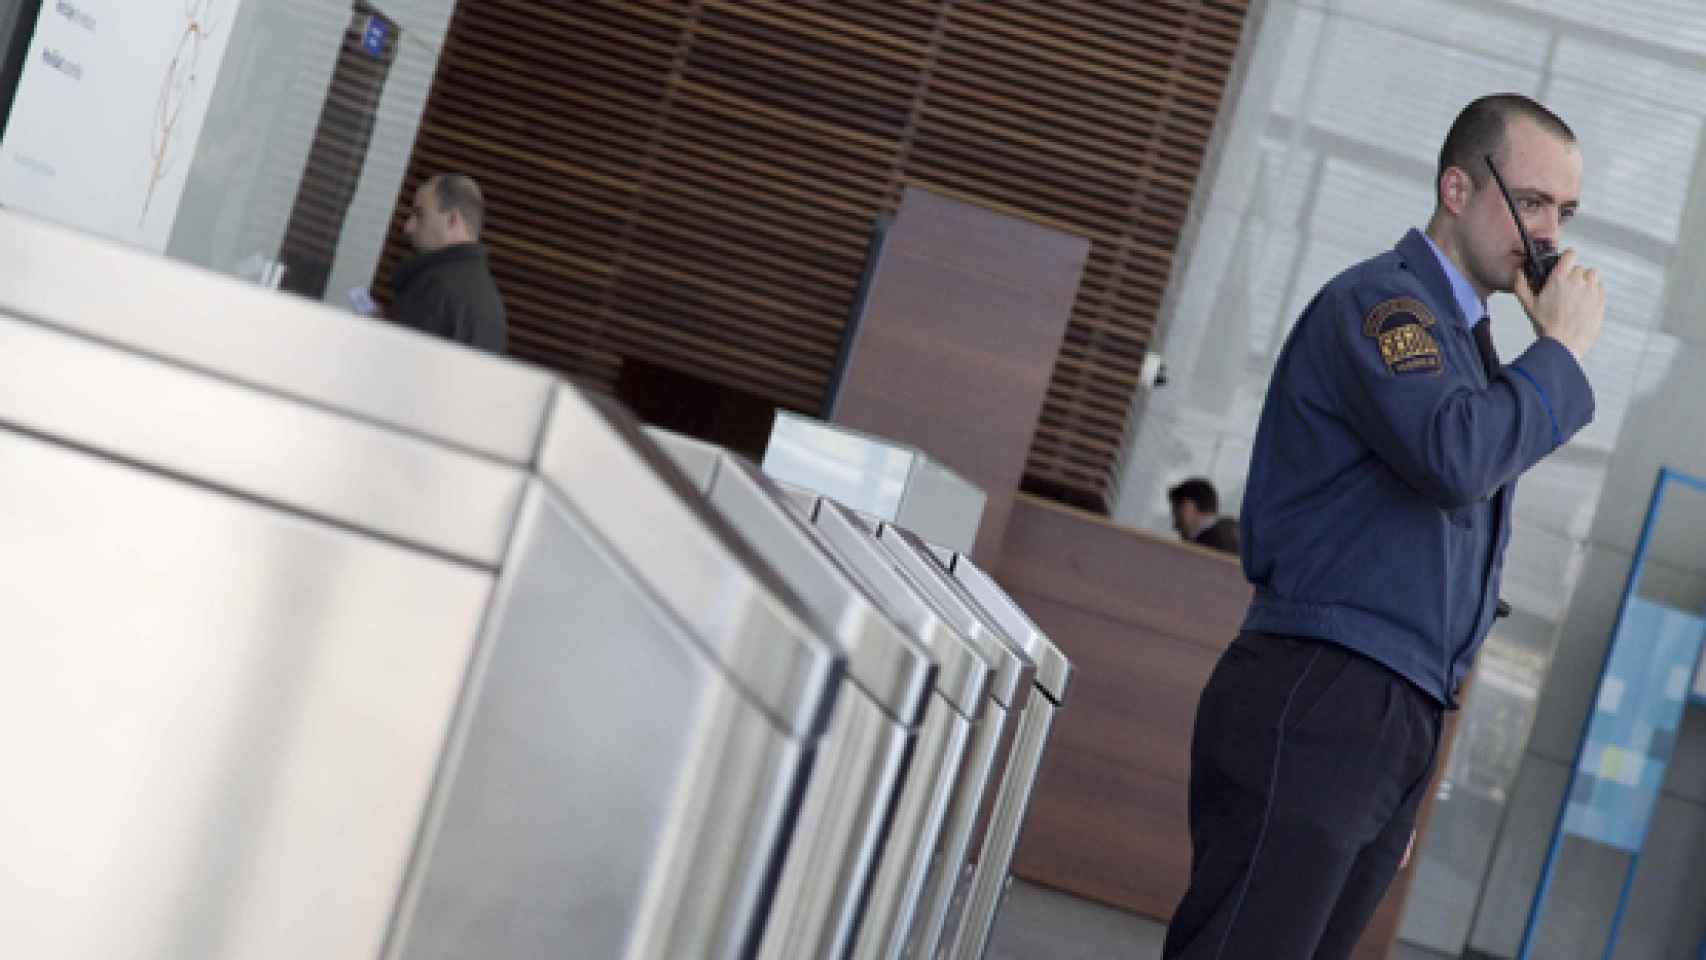 Un vigilante de seguridad privada durante su turno, en una imagen de archivo.